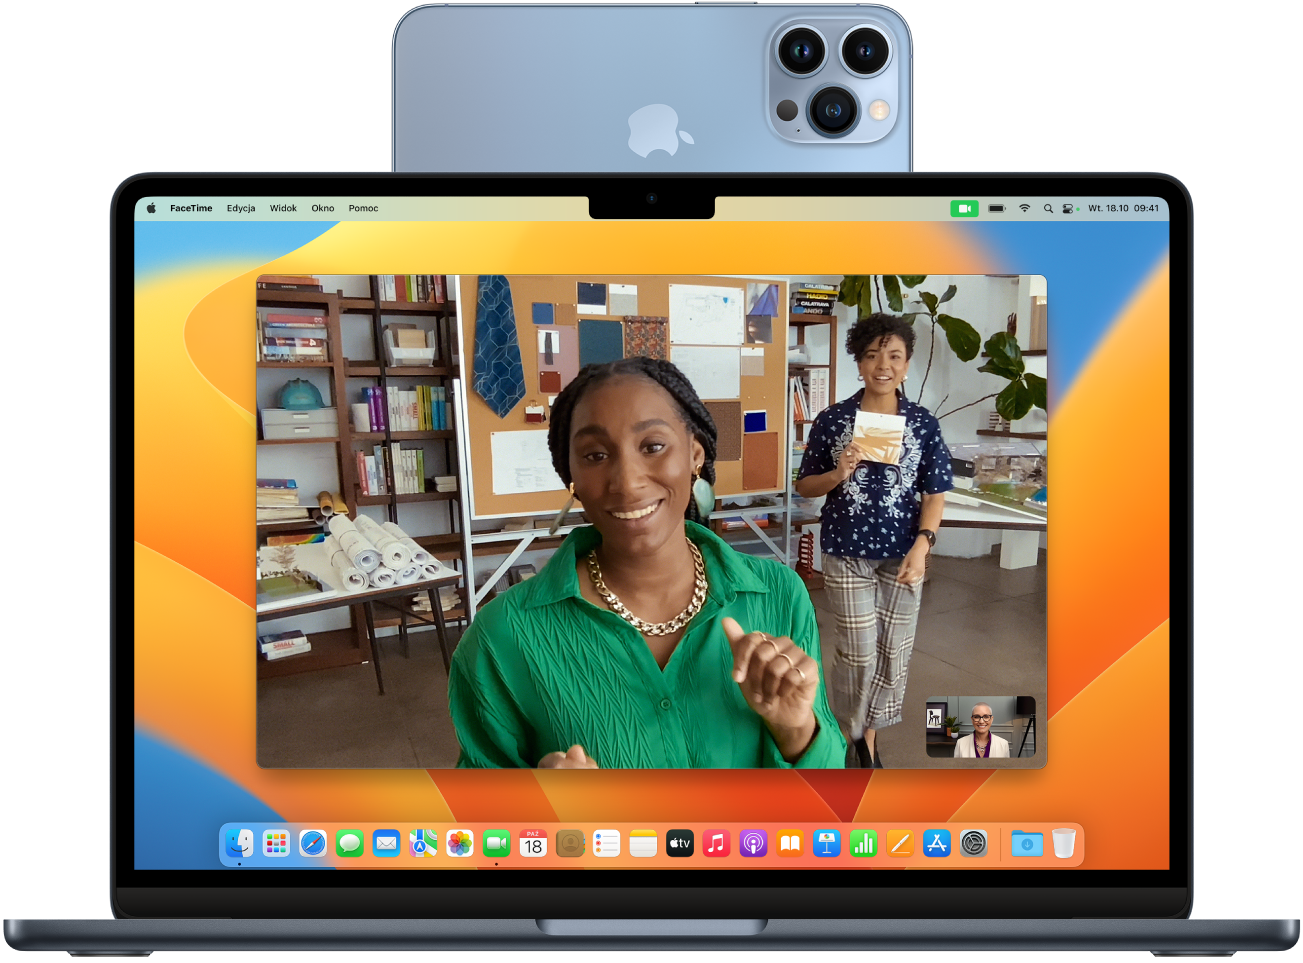 Mac z iPhone’em używanym jako kamera internetowa, zamontowanym na górze wyświetlacza. Na wyświetlaczu Maca widoczny jest obraz z aparatu iPhone’a.